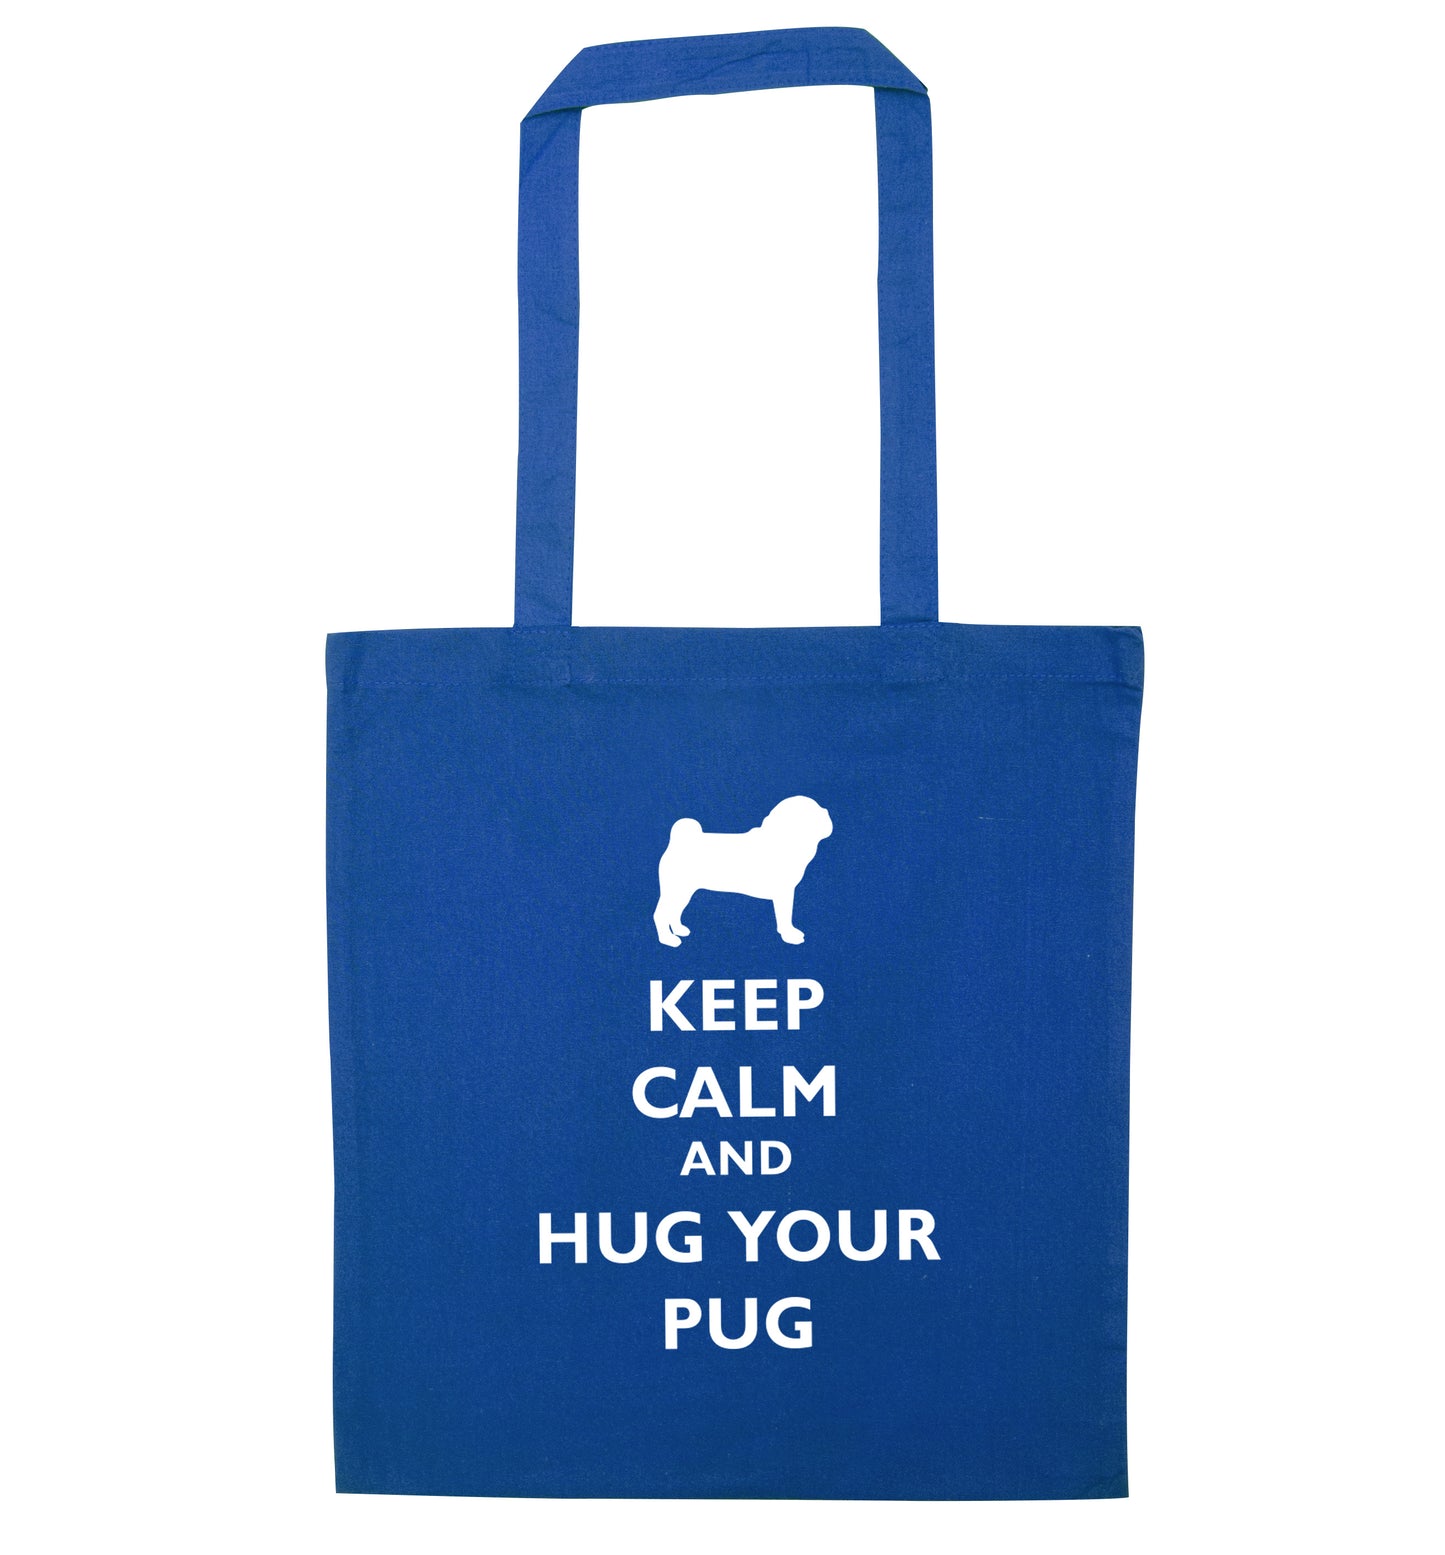 Keep calm and hug your pug blue tote bag